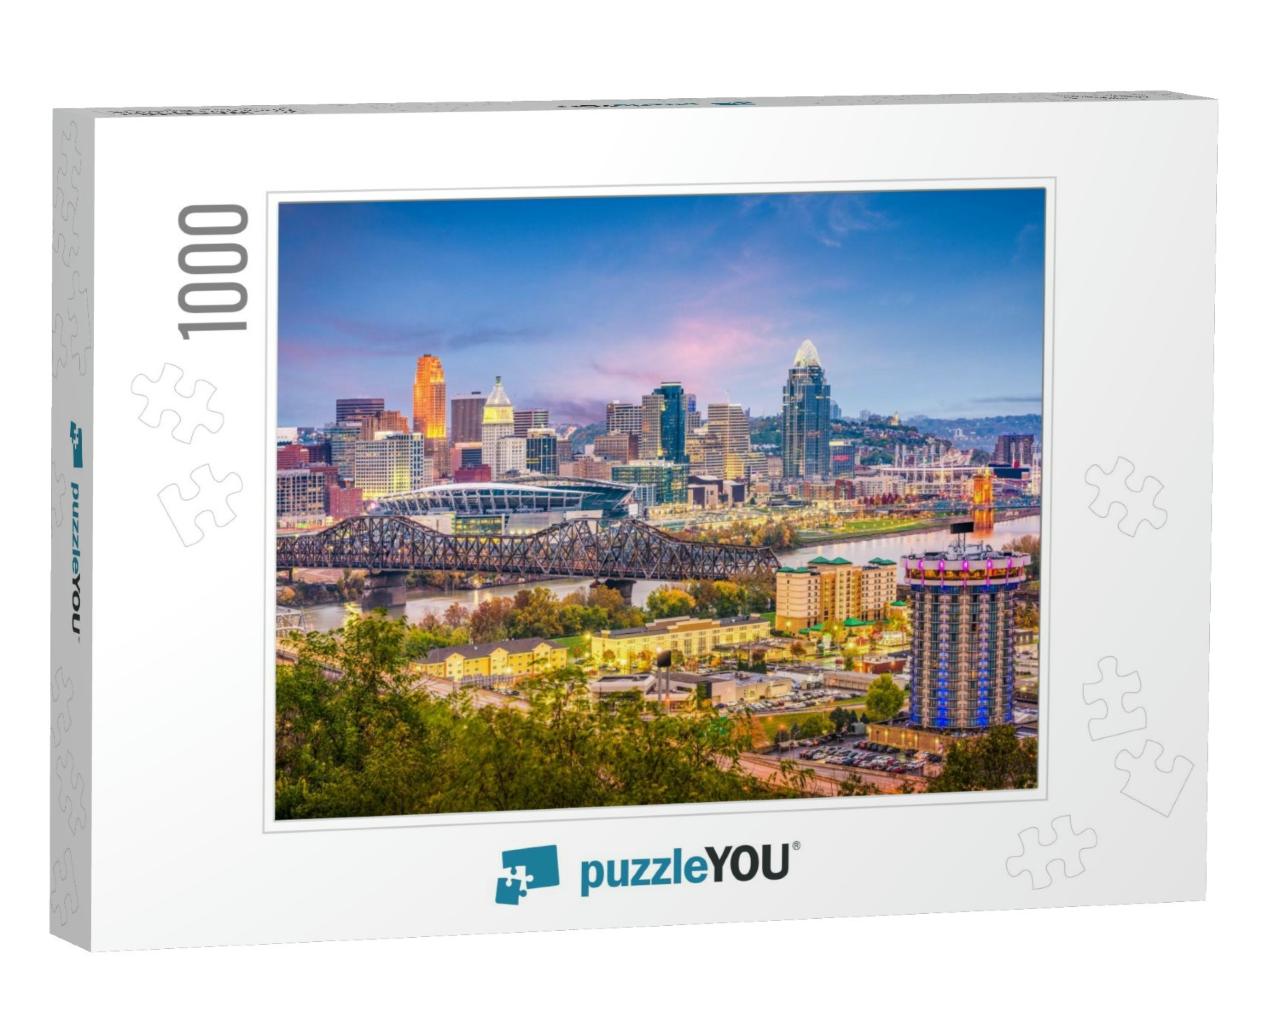 Cincinnati, Ohio, USA Skyline At Dusk... Jigsaw Puzzle with 1000 pieces